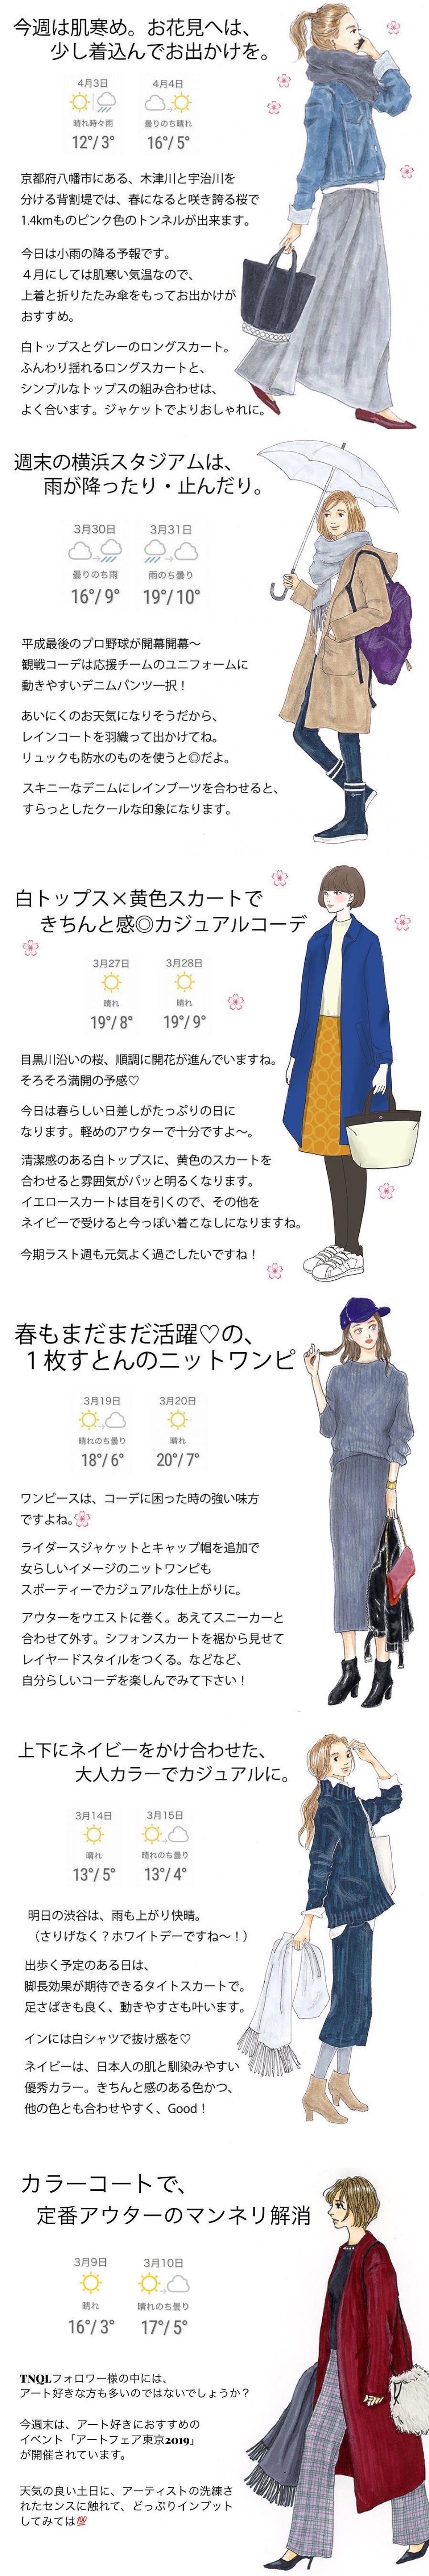 日本女子穿搭 大人感通勤穿搭笔记女子绘 堆糖 美图壁纸兴趣社区